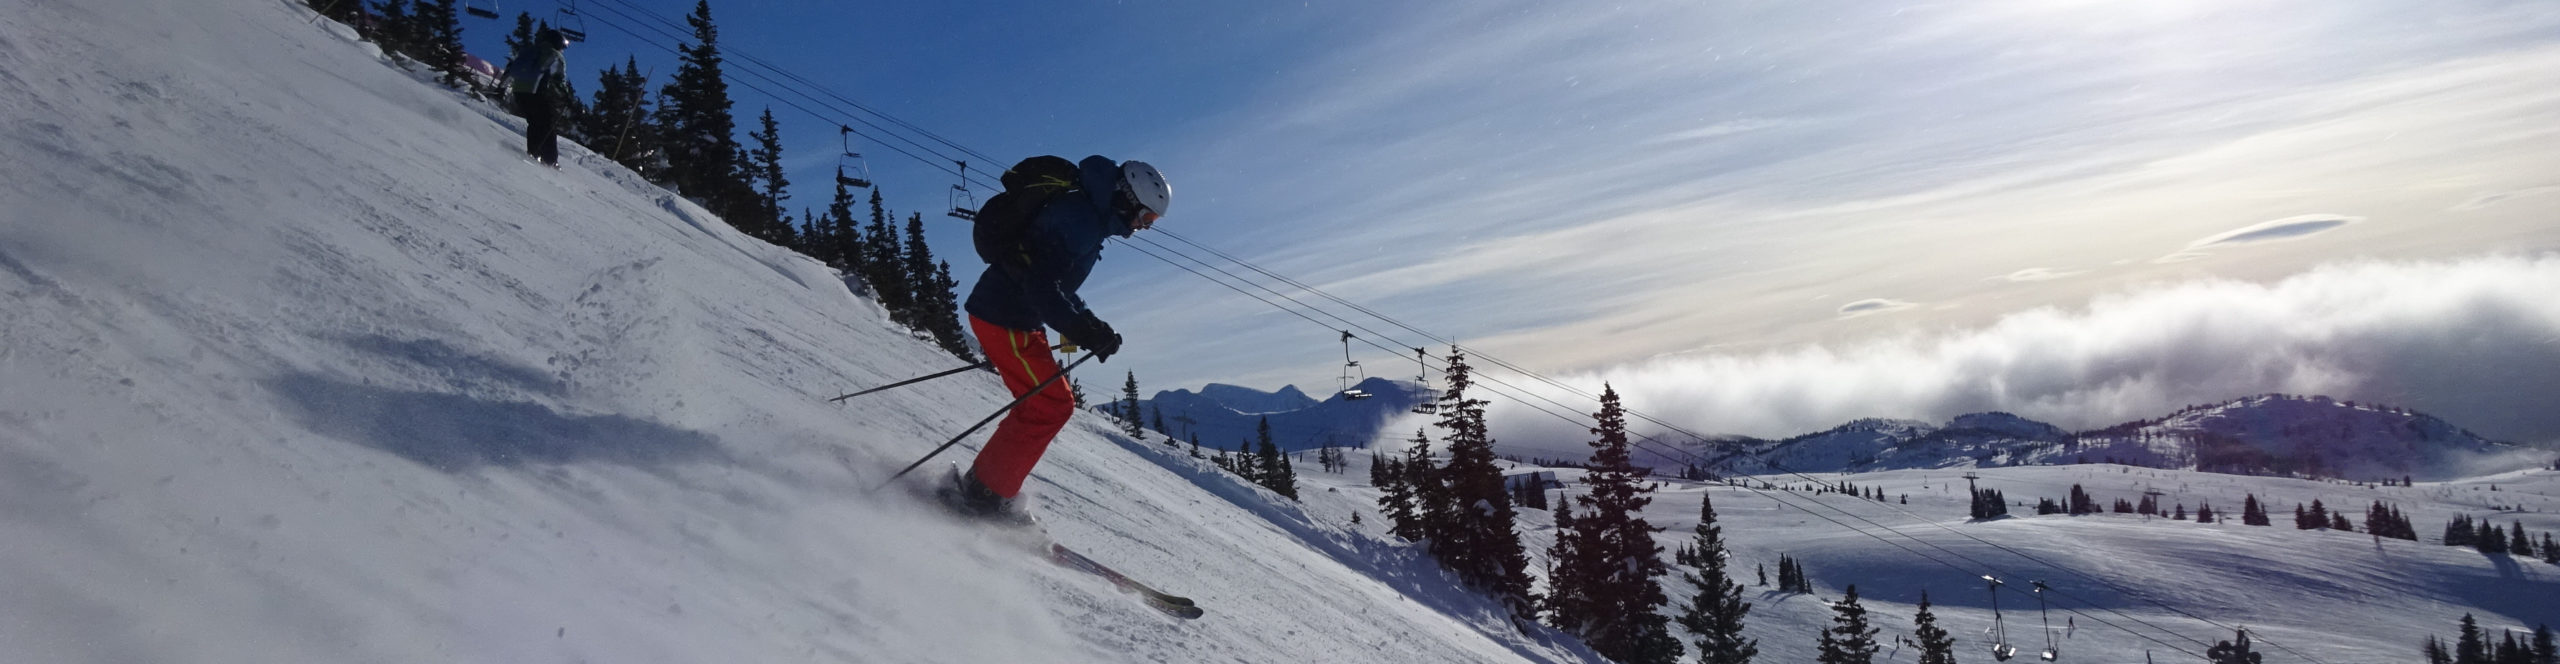 KANADA – Rocky Mountains – Banff – Lake Louise – Sunshine Village – Panorama – 7 Skitage 